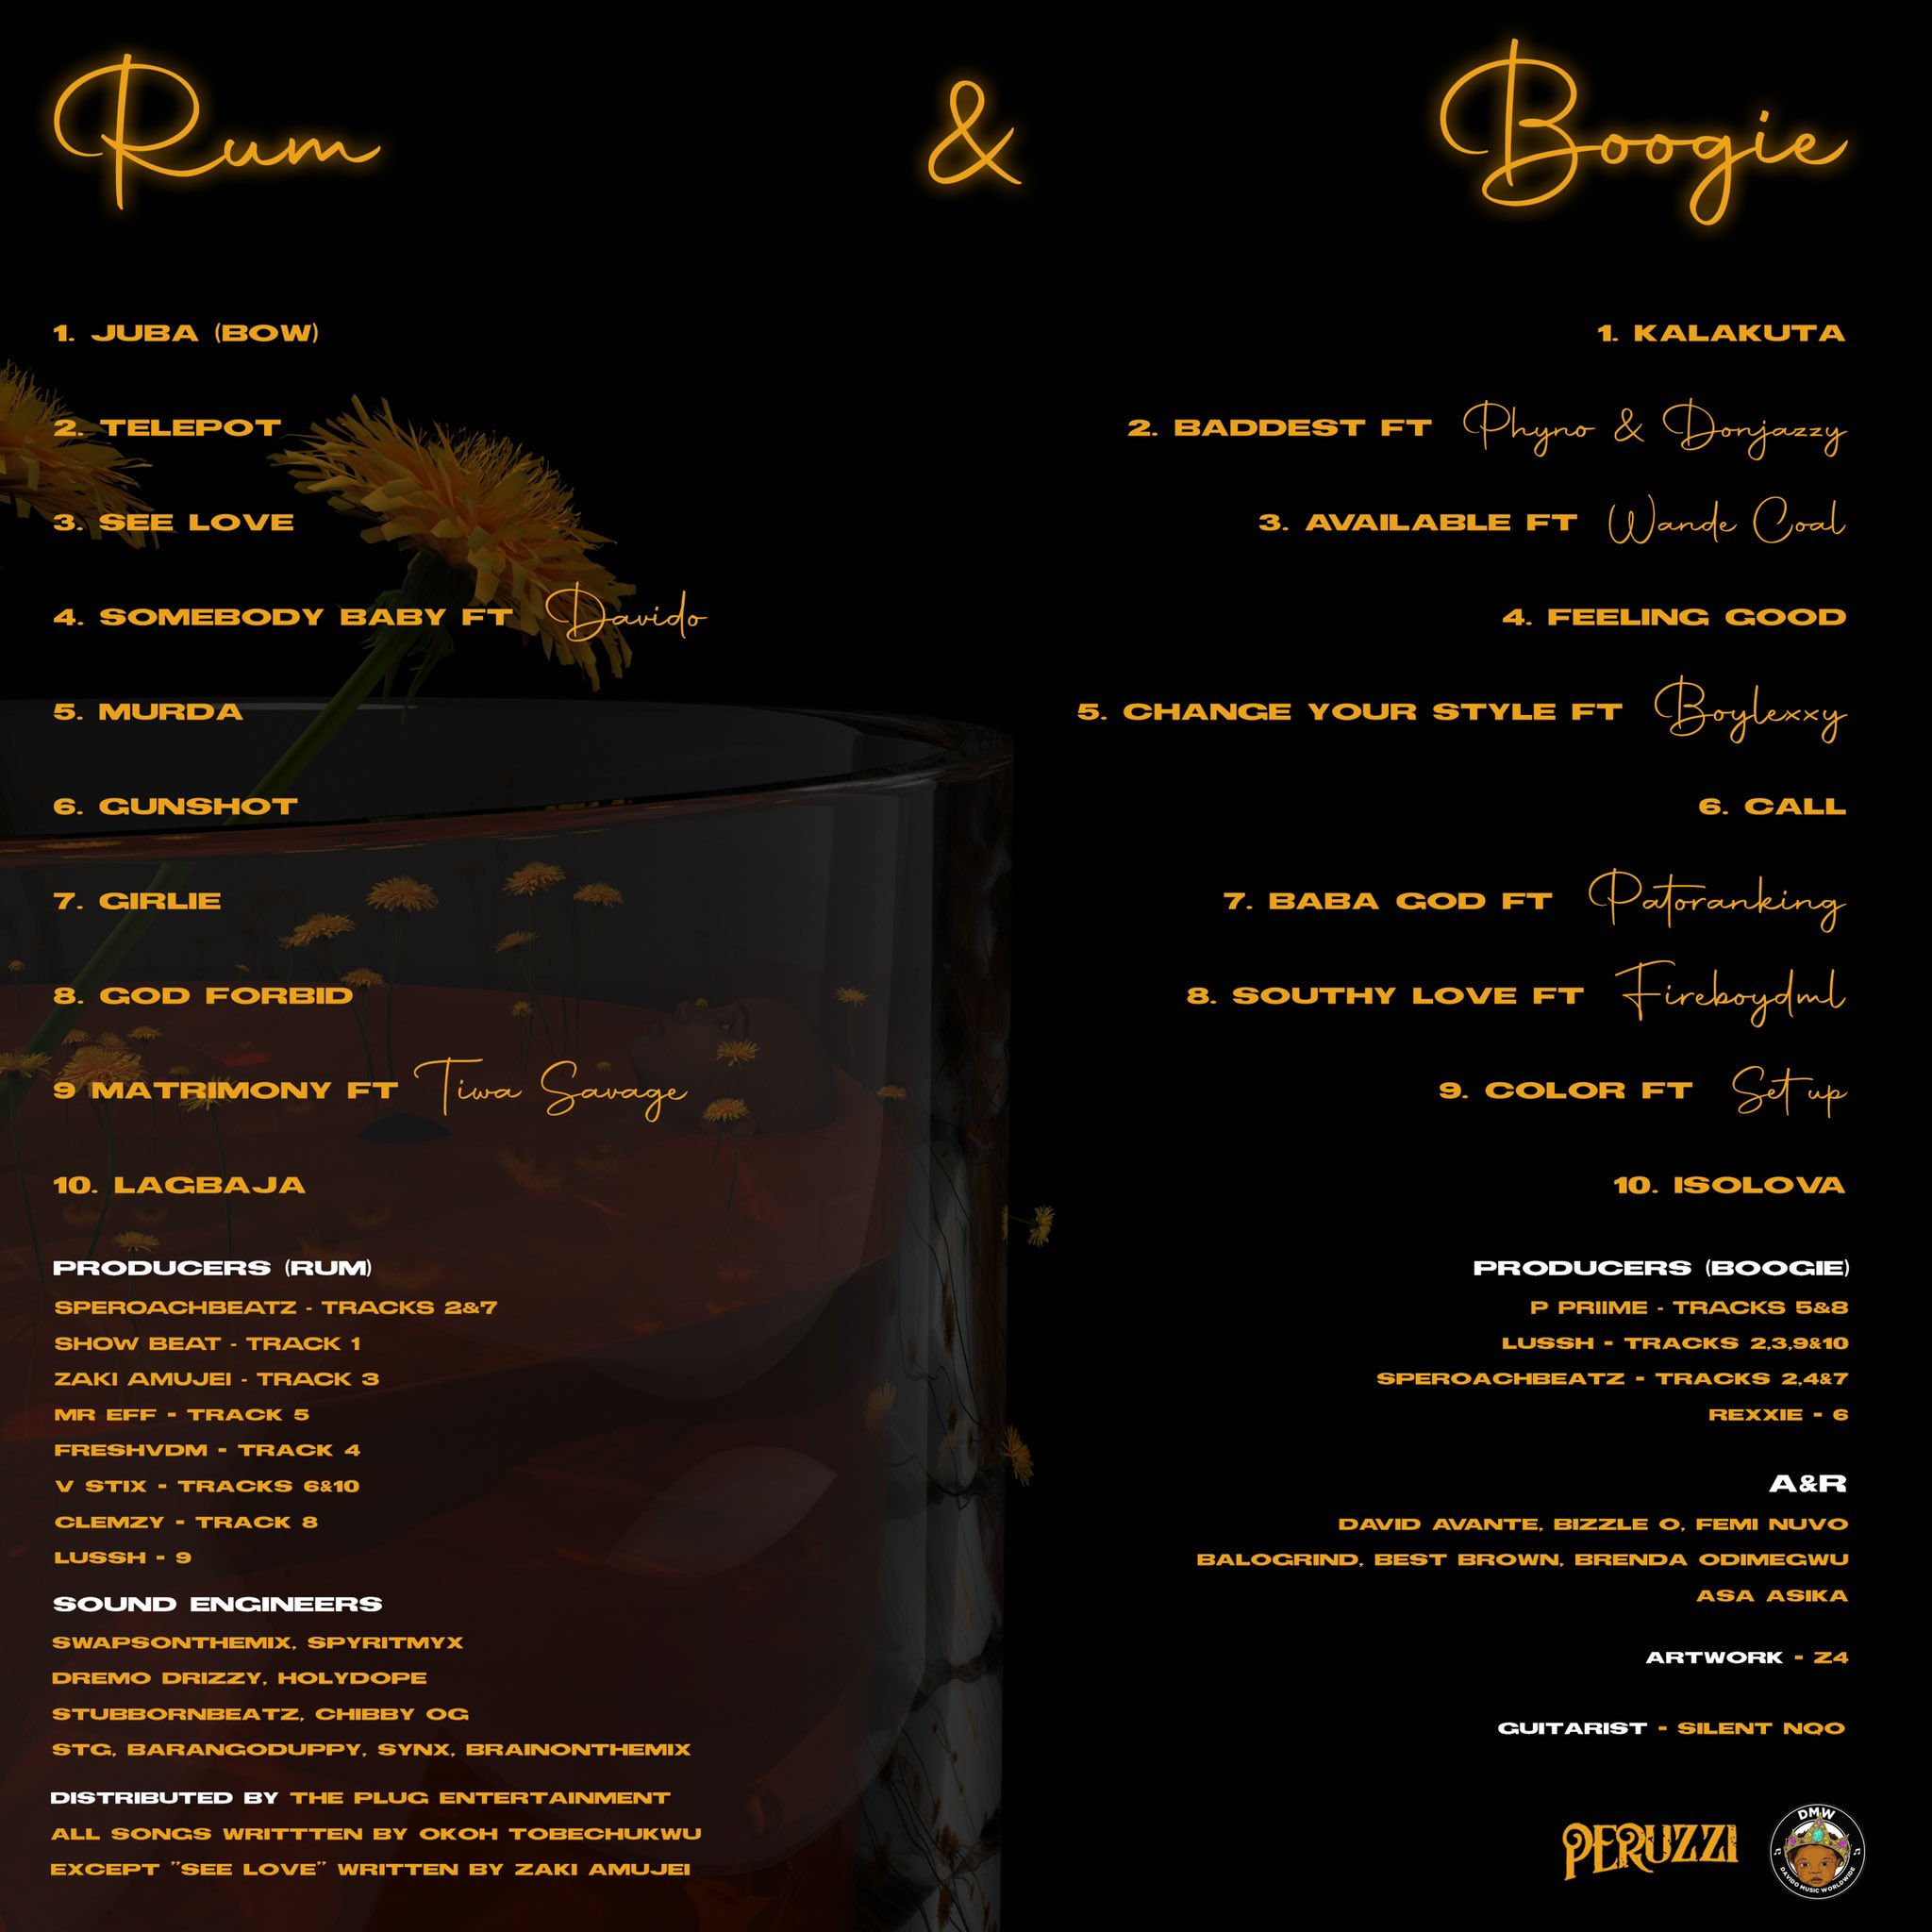 Peruzzi’s Rum and Boogi tracklist